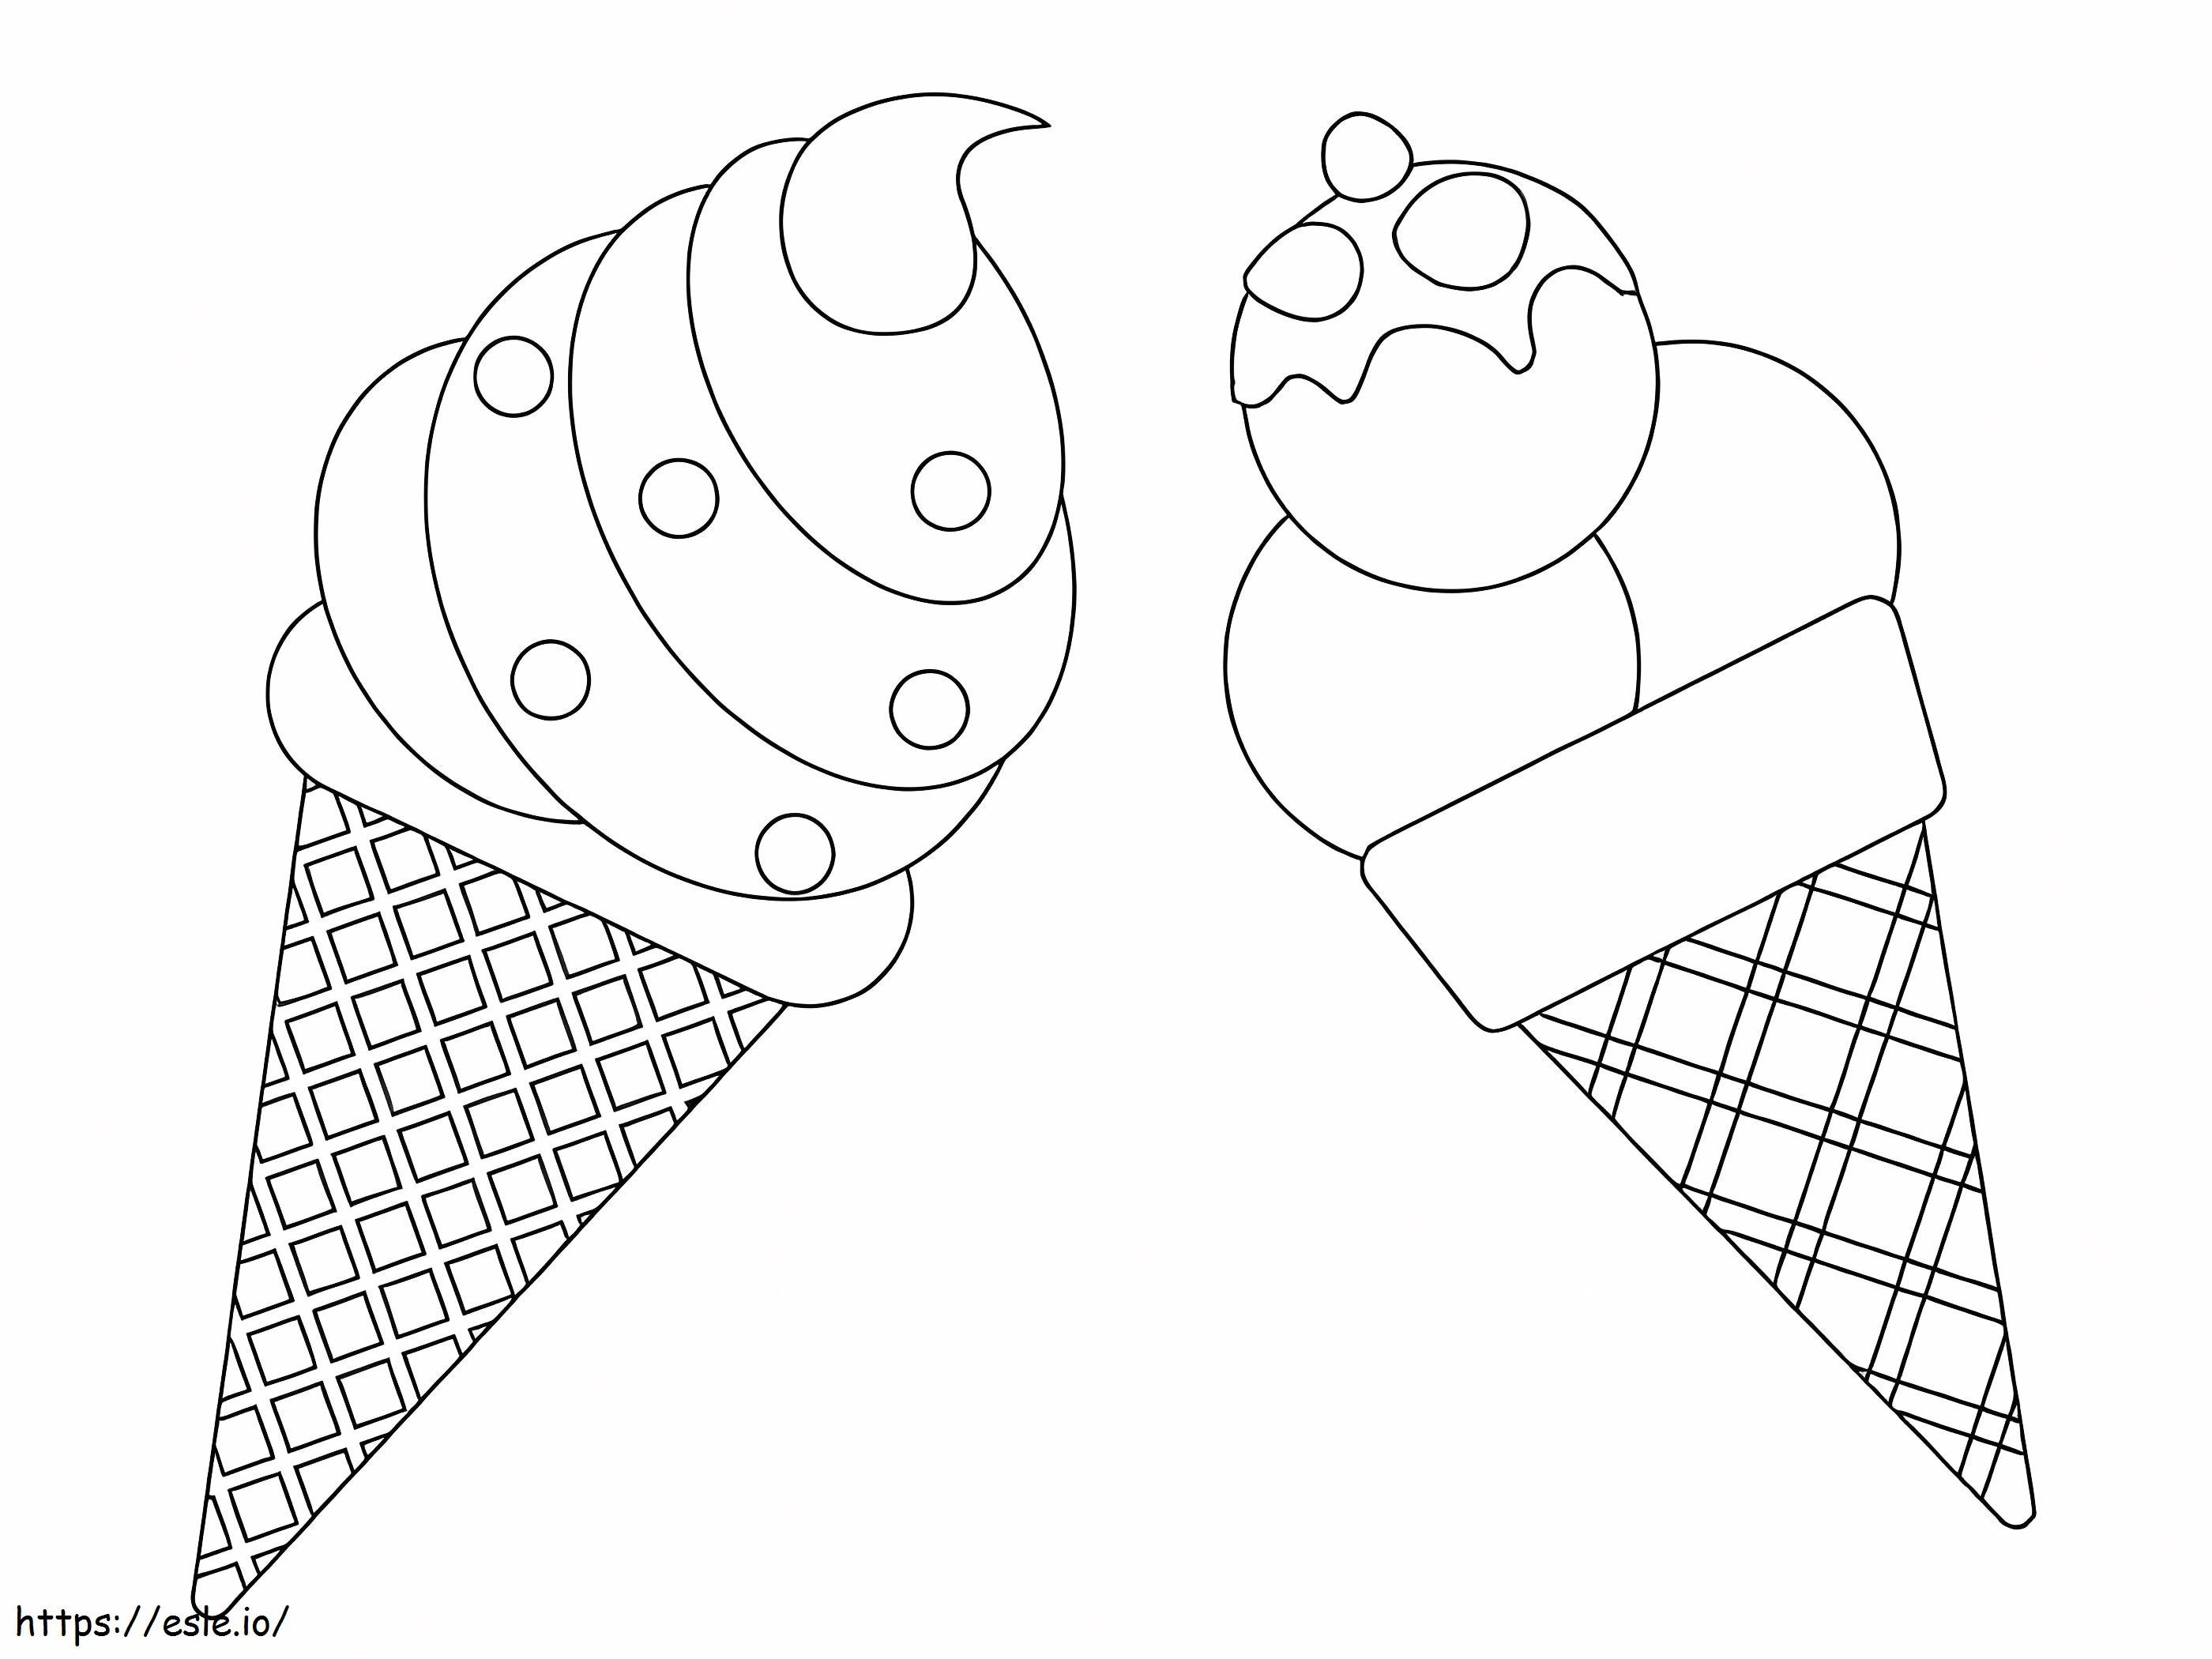 Coloriage Deux glaces à imprimer dessin